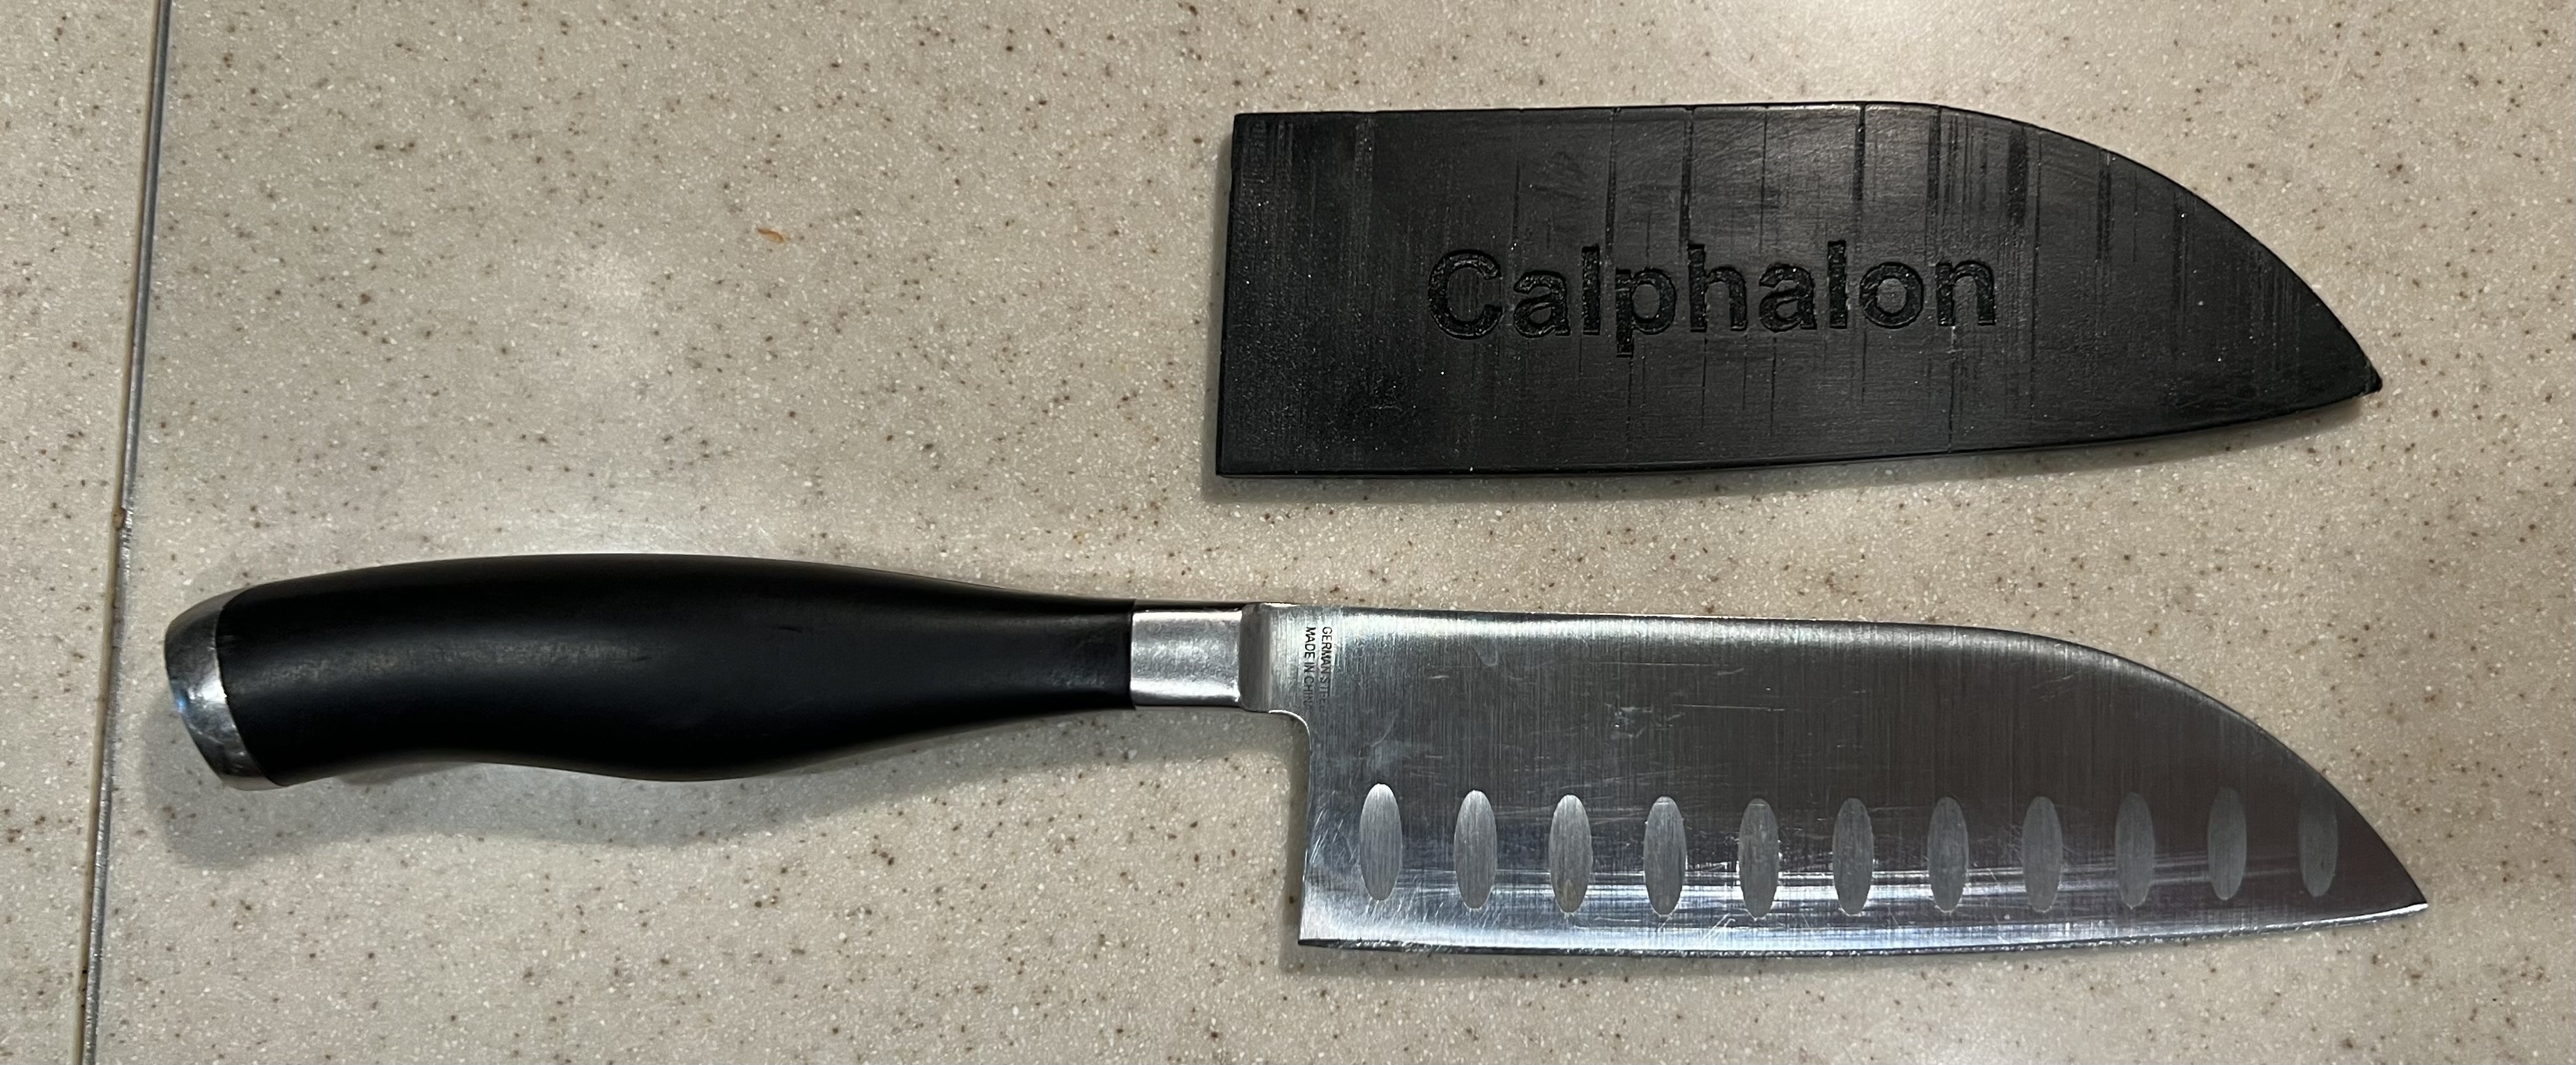 Calphalon Santoku 5 inch Knife Sheath